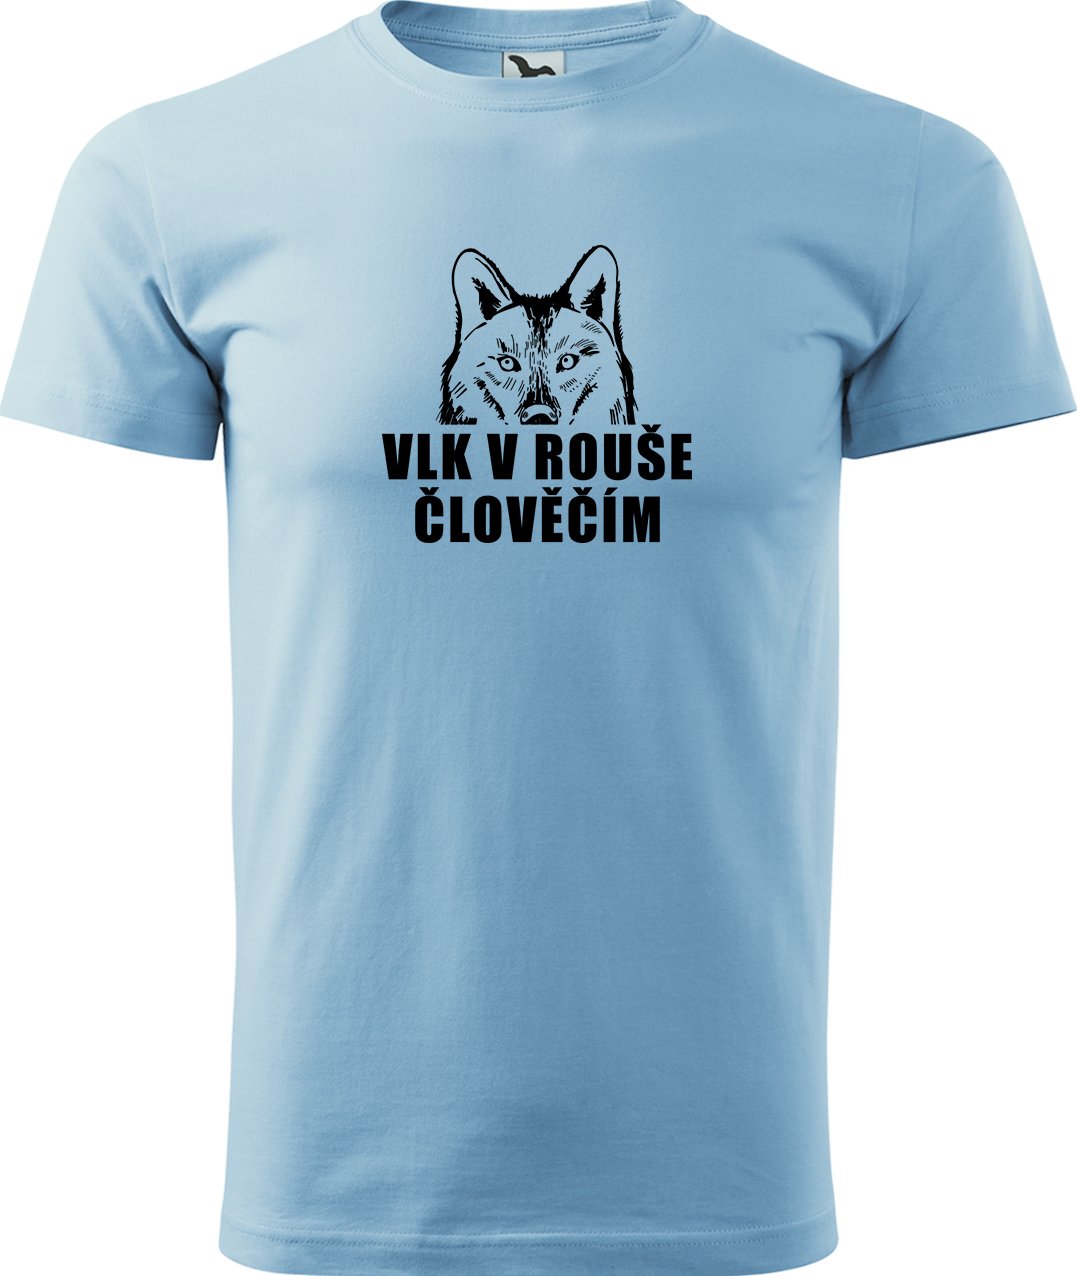 Pánské tričko s vlkem - Vlk v rouše člověčím Velikost: S, Barva: Nebesky modrá (15), Střih: pánský